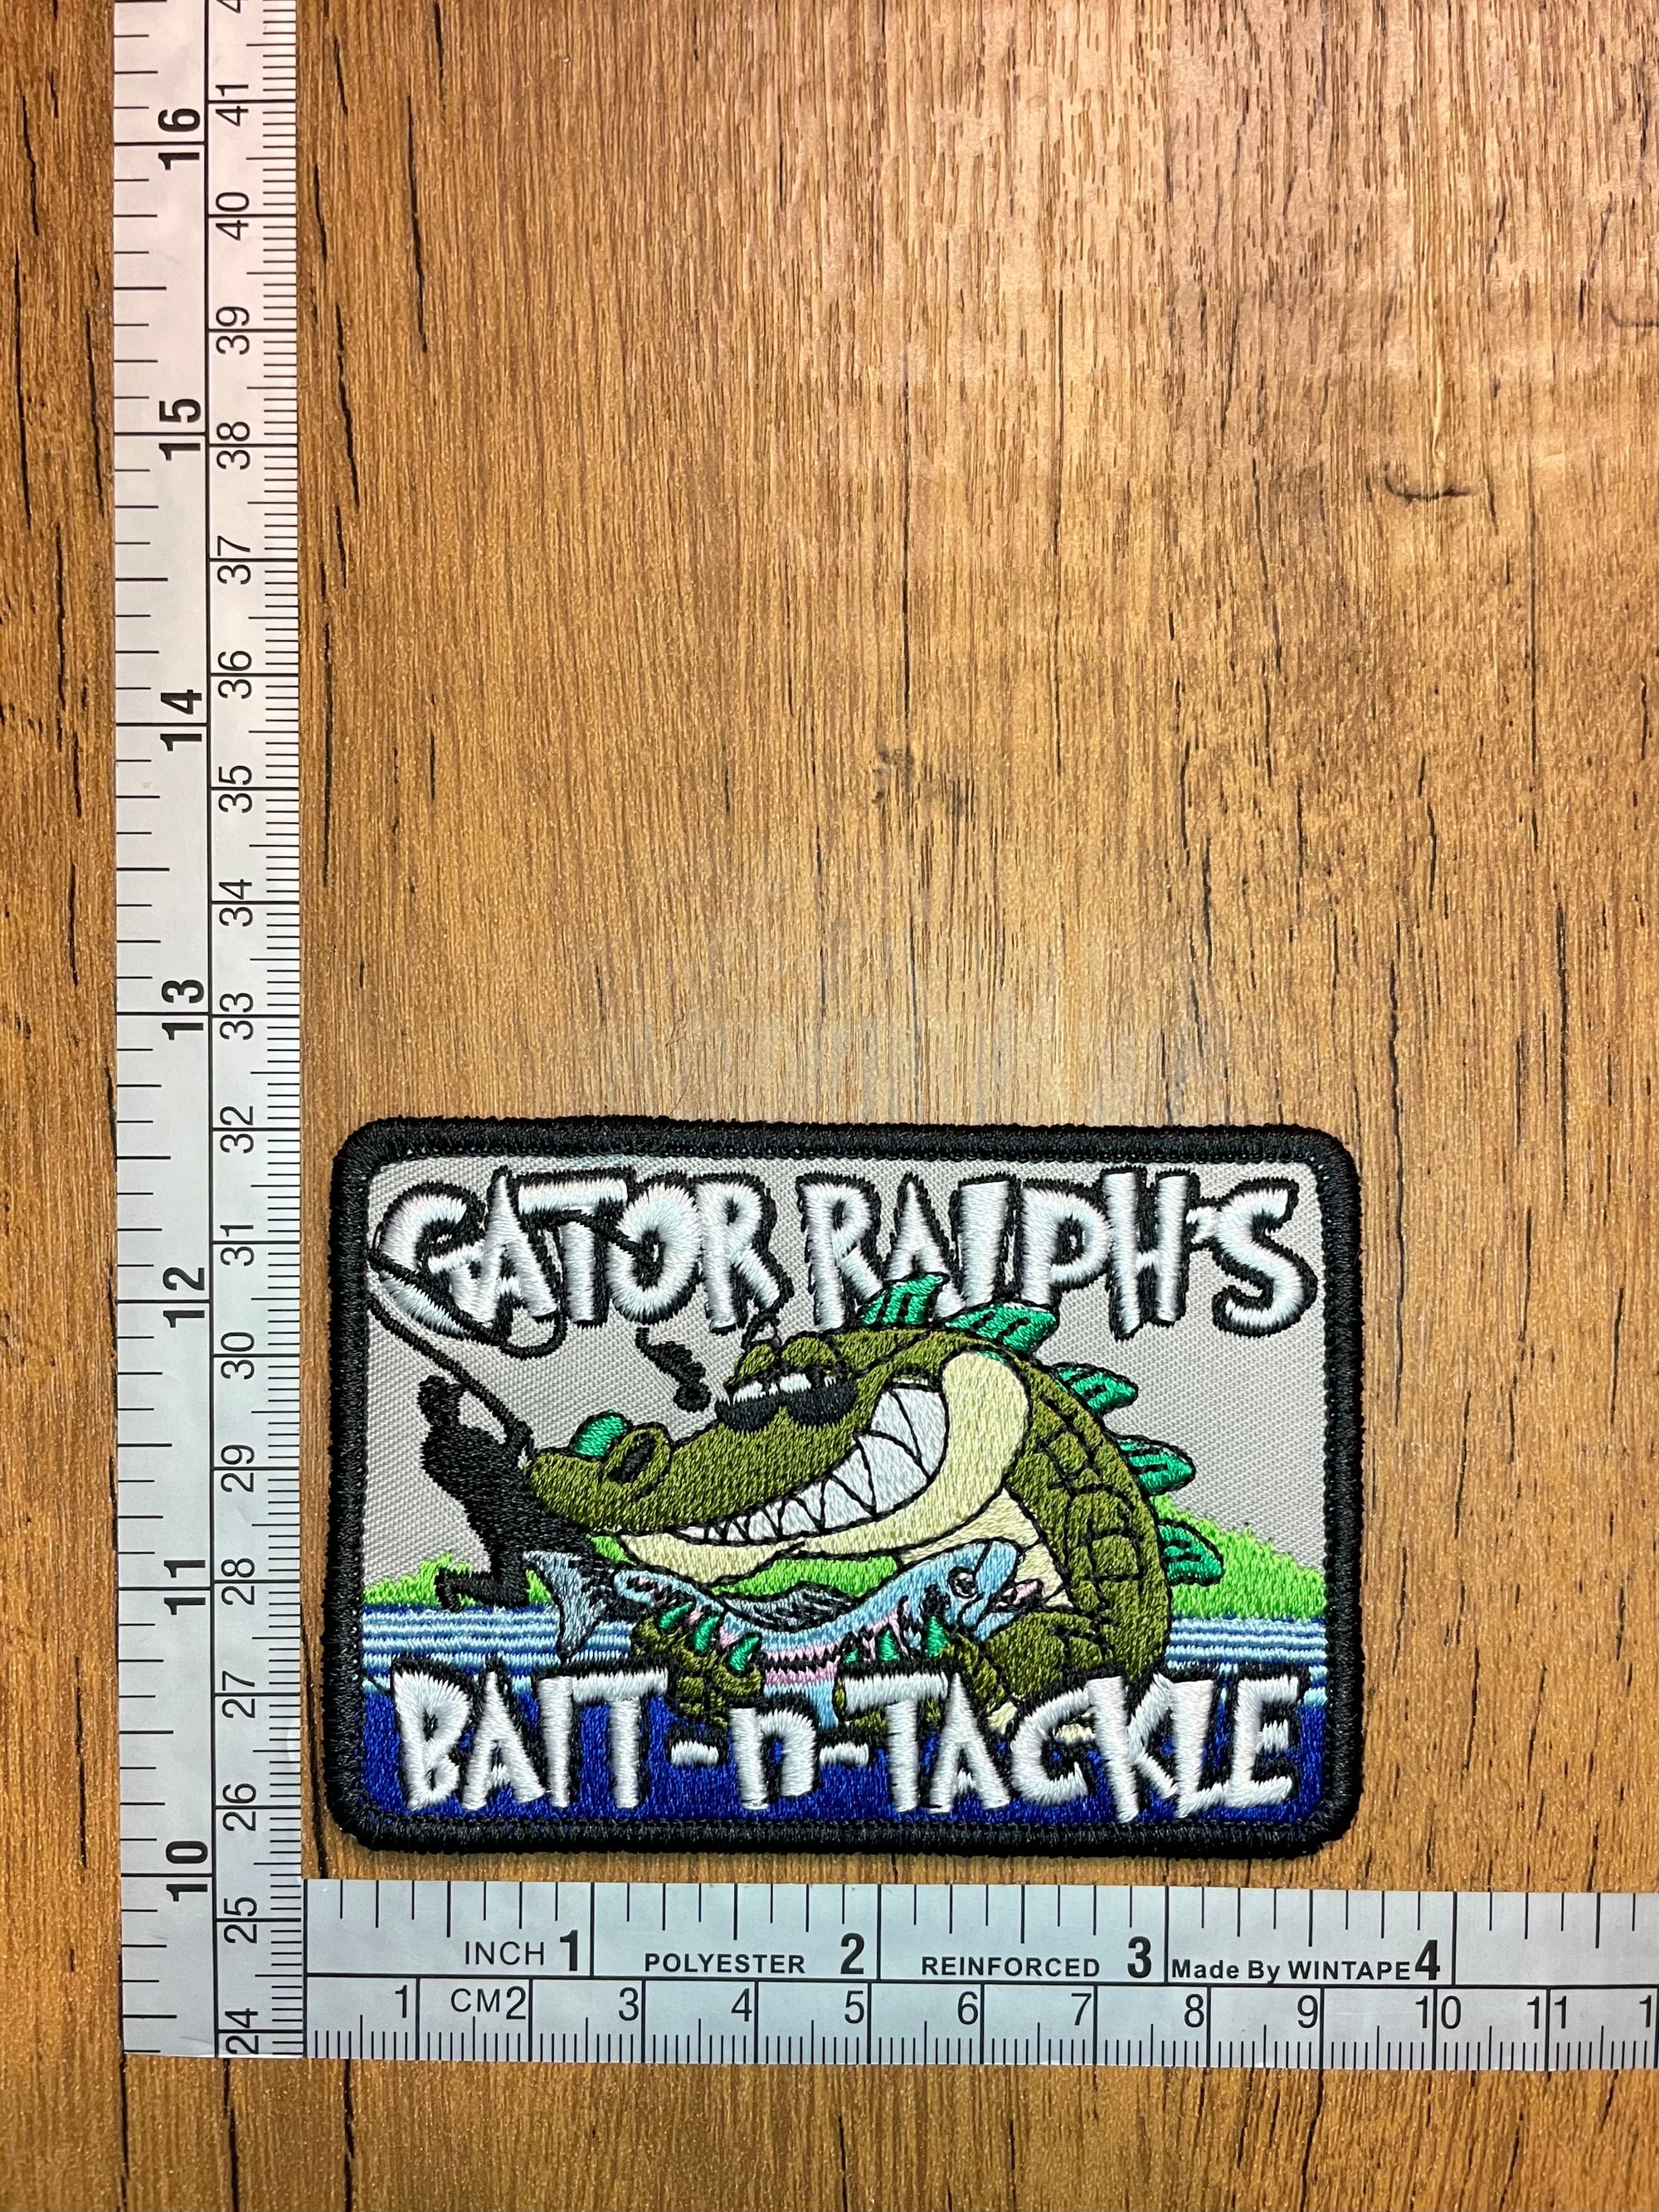 Gator Ralph’s Bait-n-Tackle